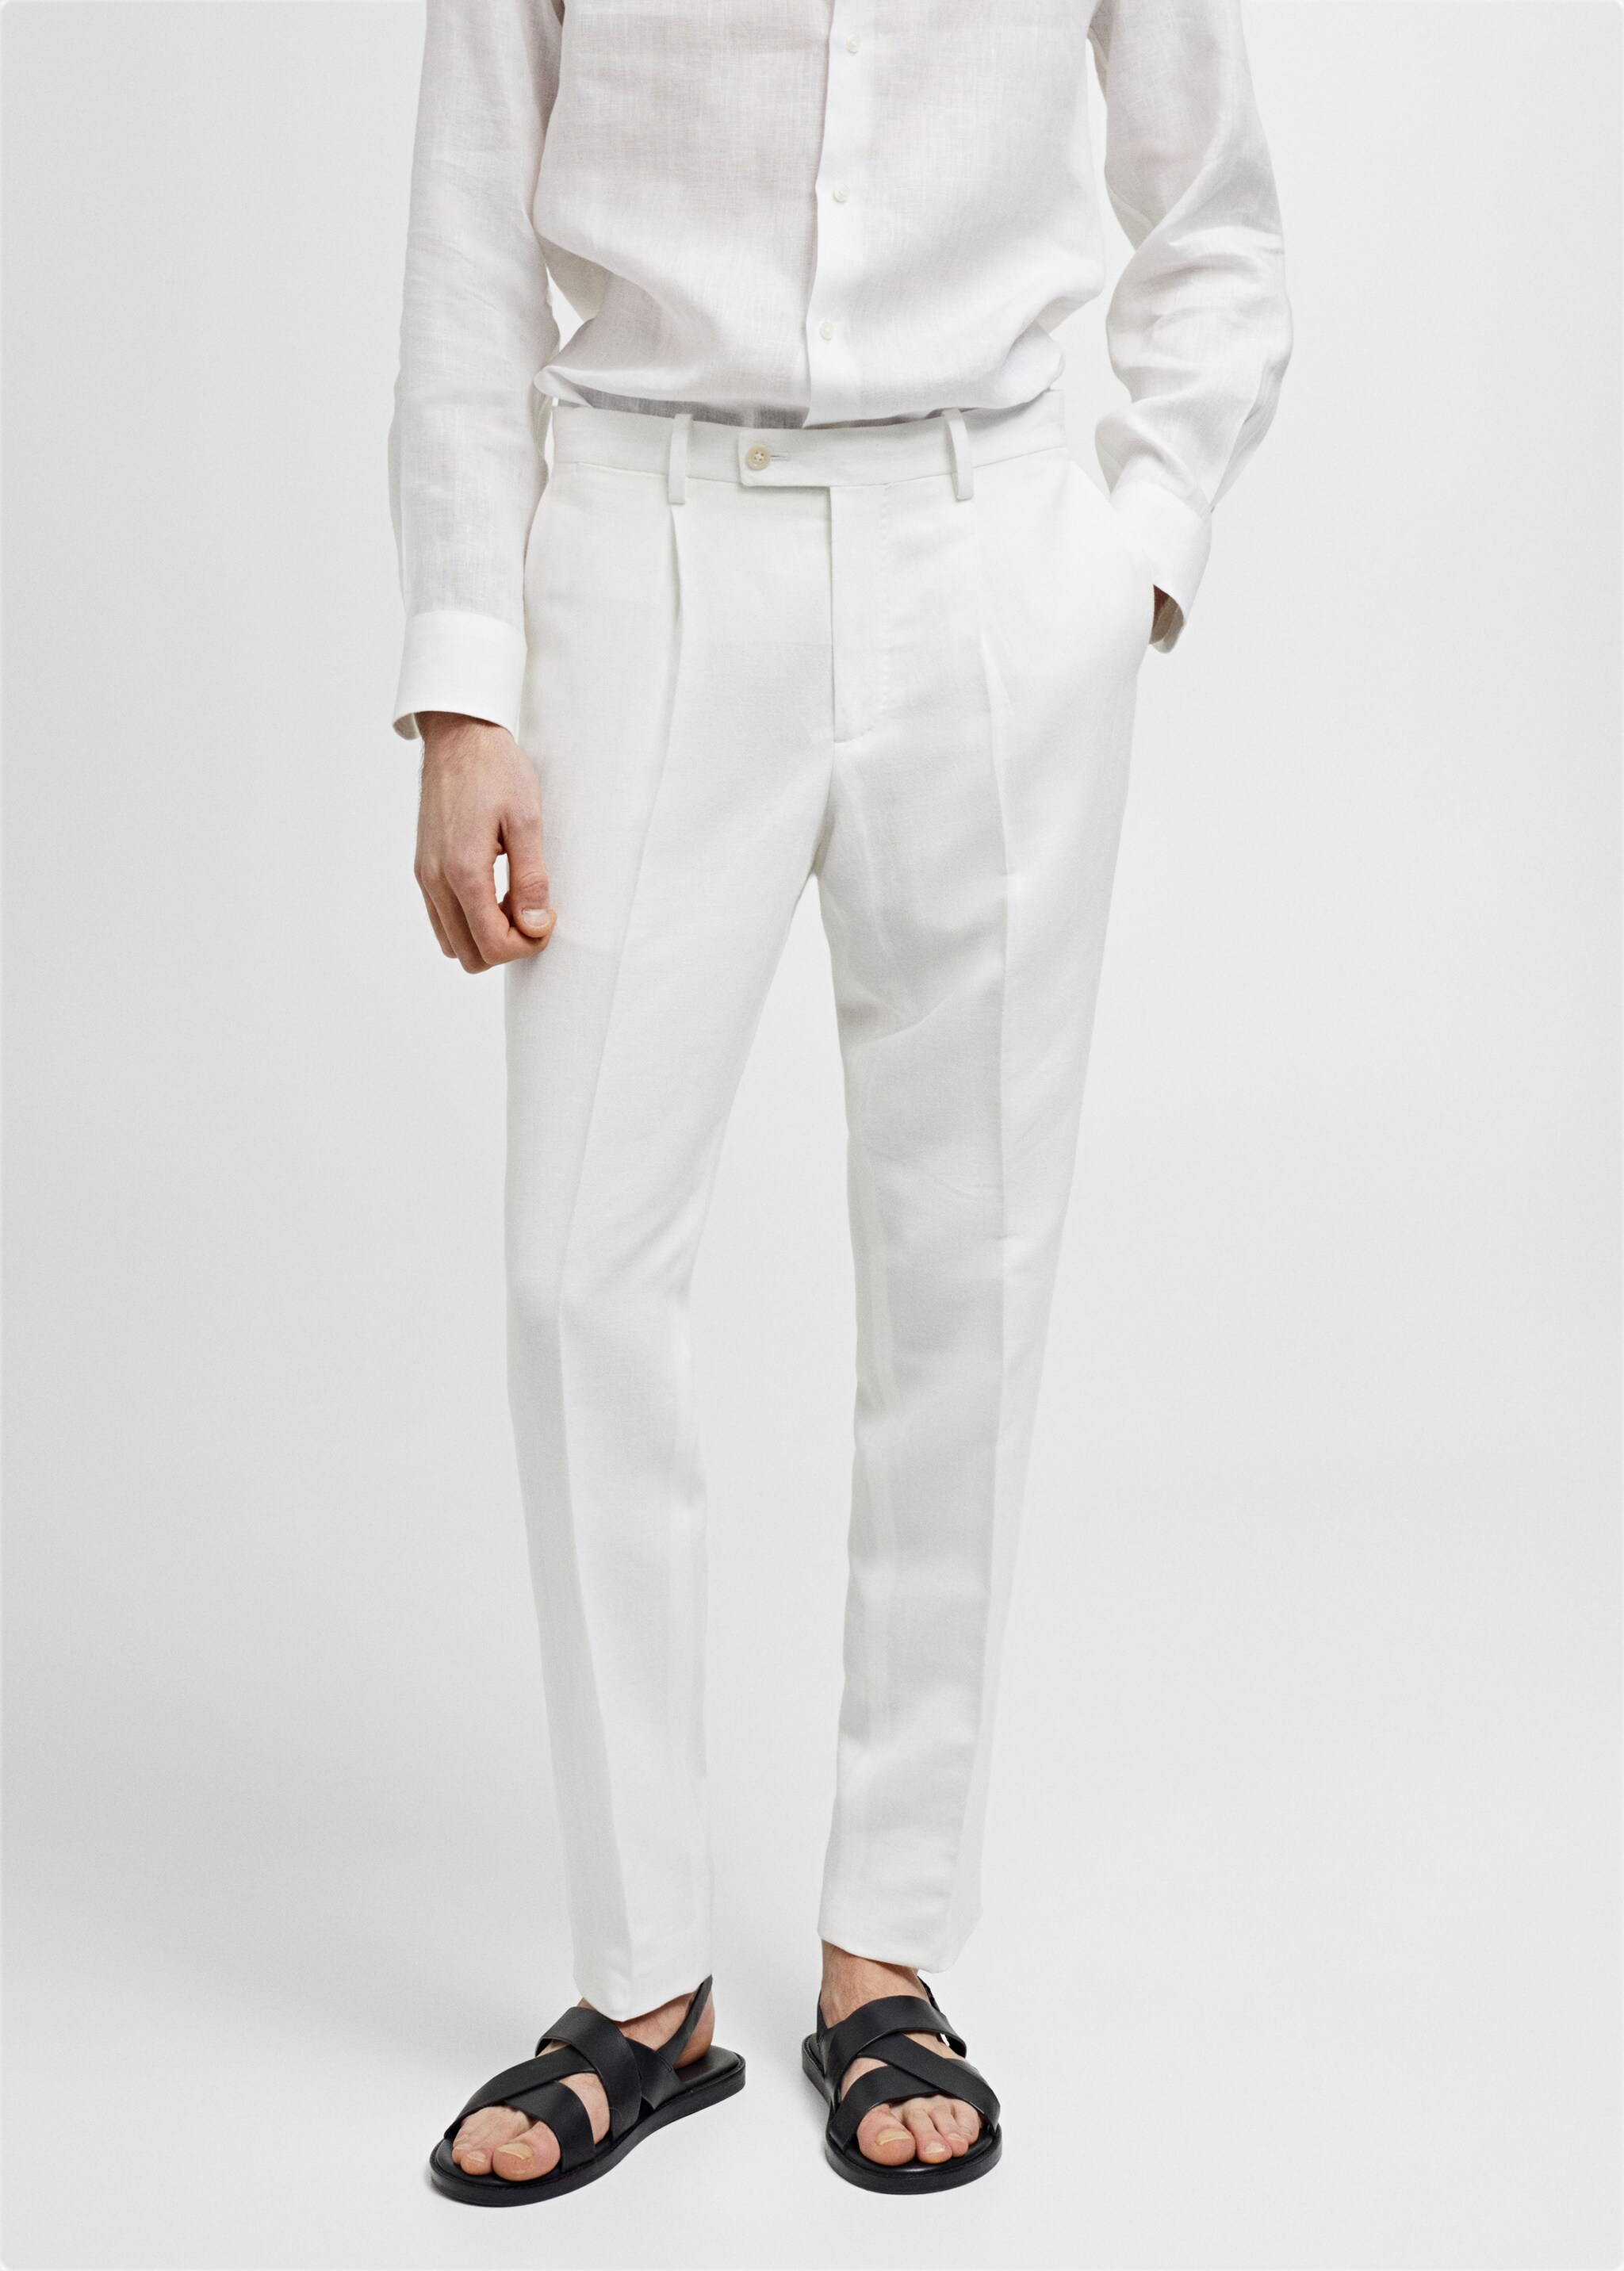 Slim fit cotton and linen suit pants - Medium plane